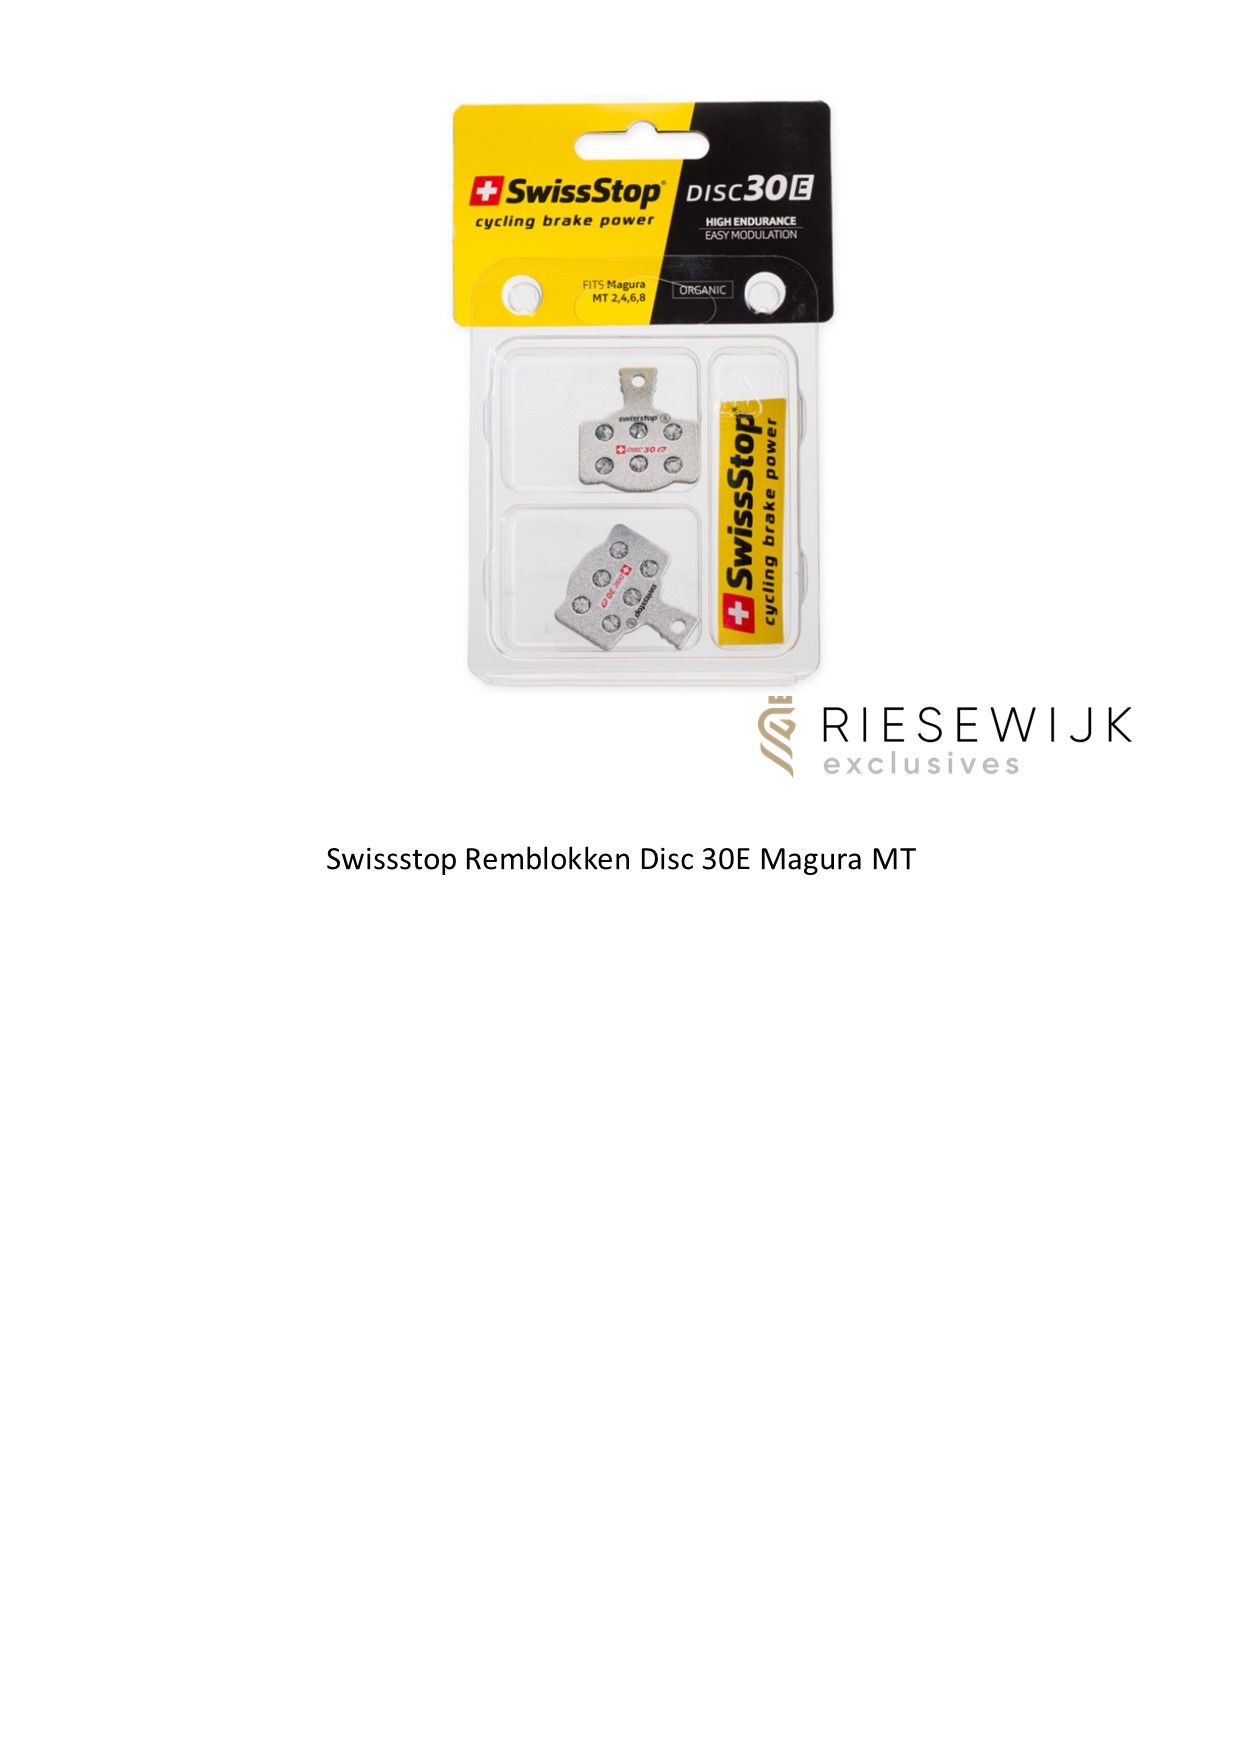 spons Tub Huiswerk maken Swissstop Remblokken Disc 30 E Magura MT - Riesewijk Exclusives